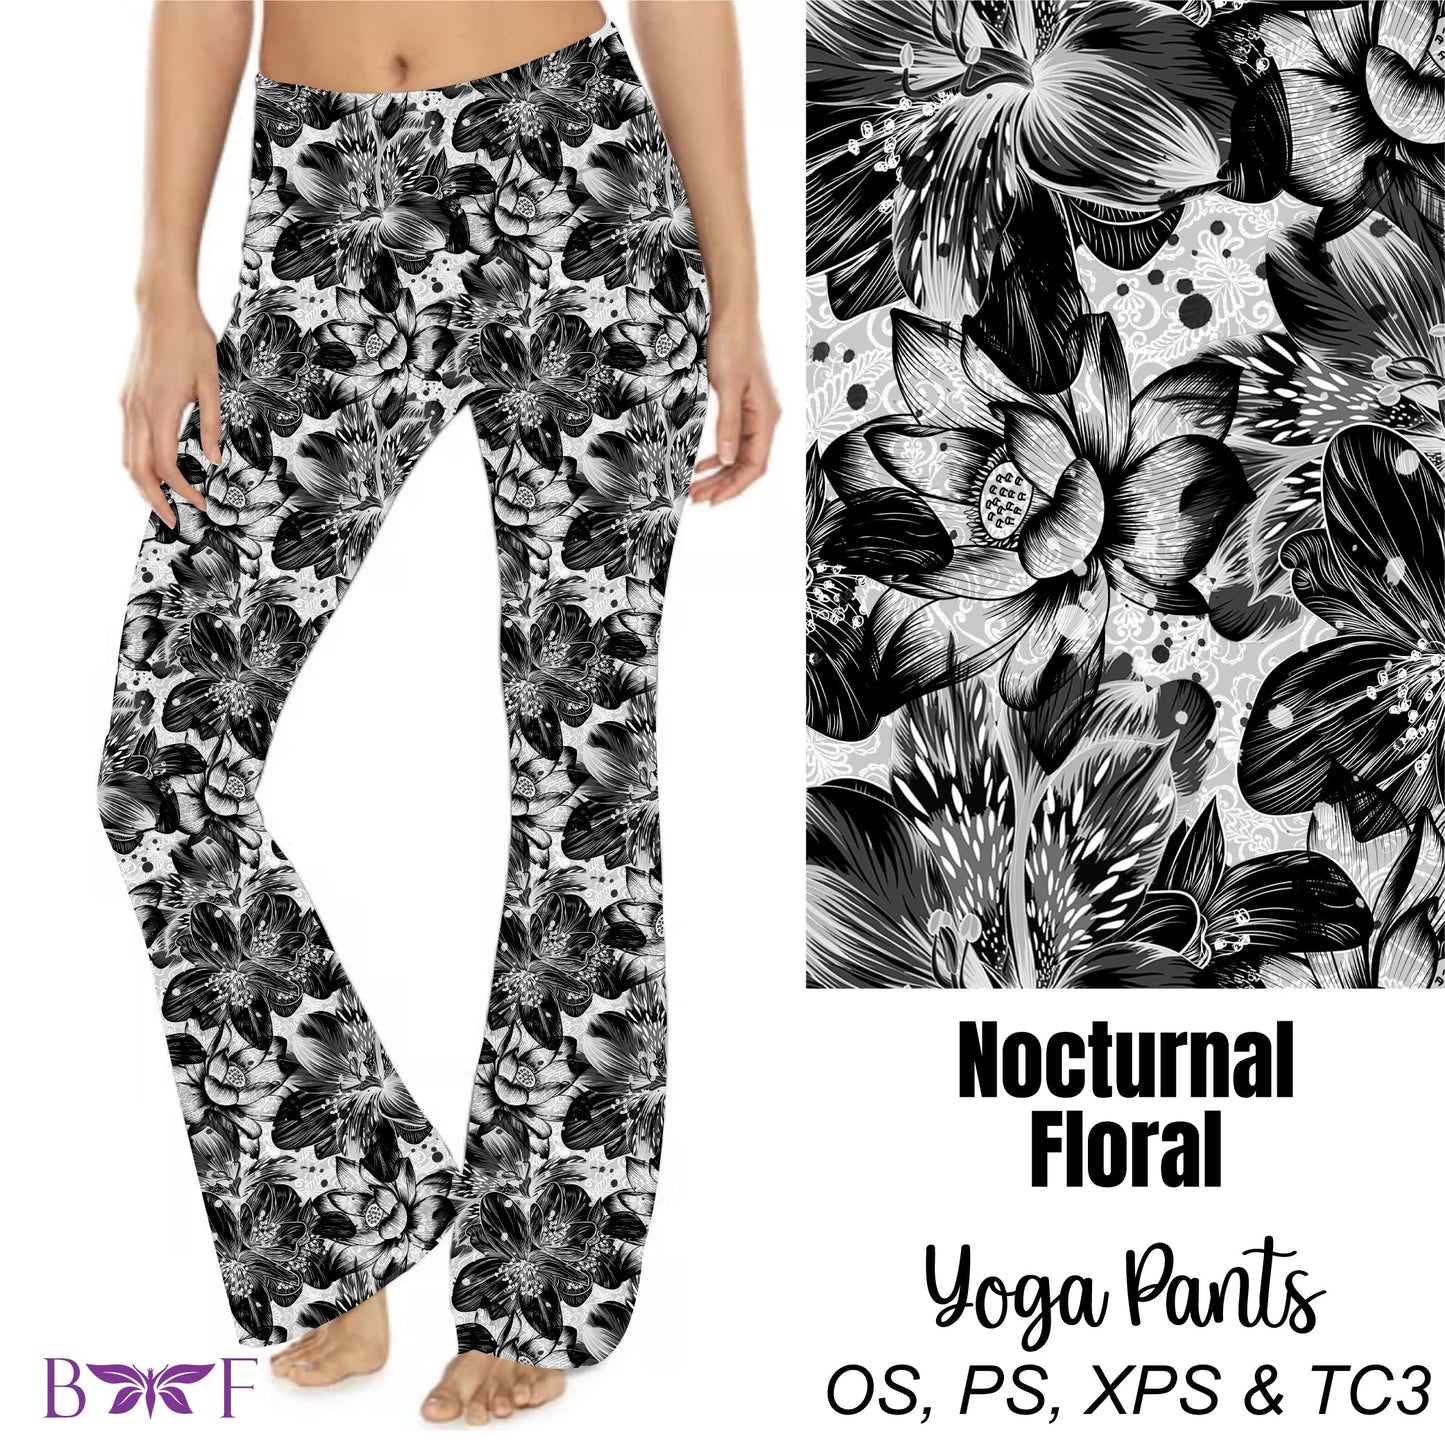 Nocturnal Floral yoga pants